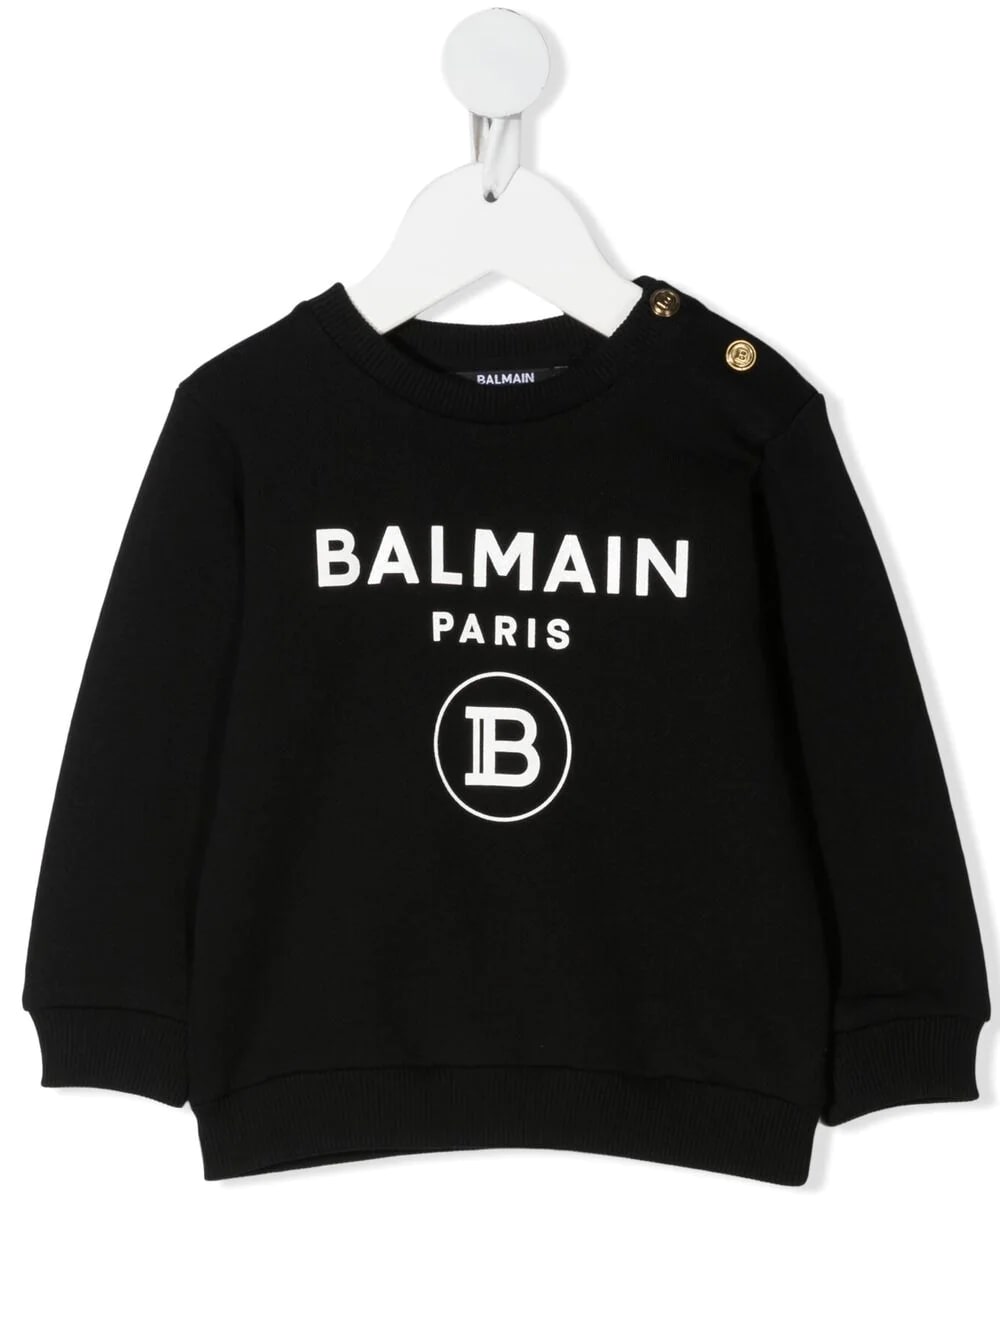 Balmain Newborn Black Sweatshirt With Golden Buttons